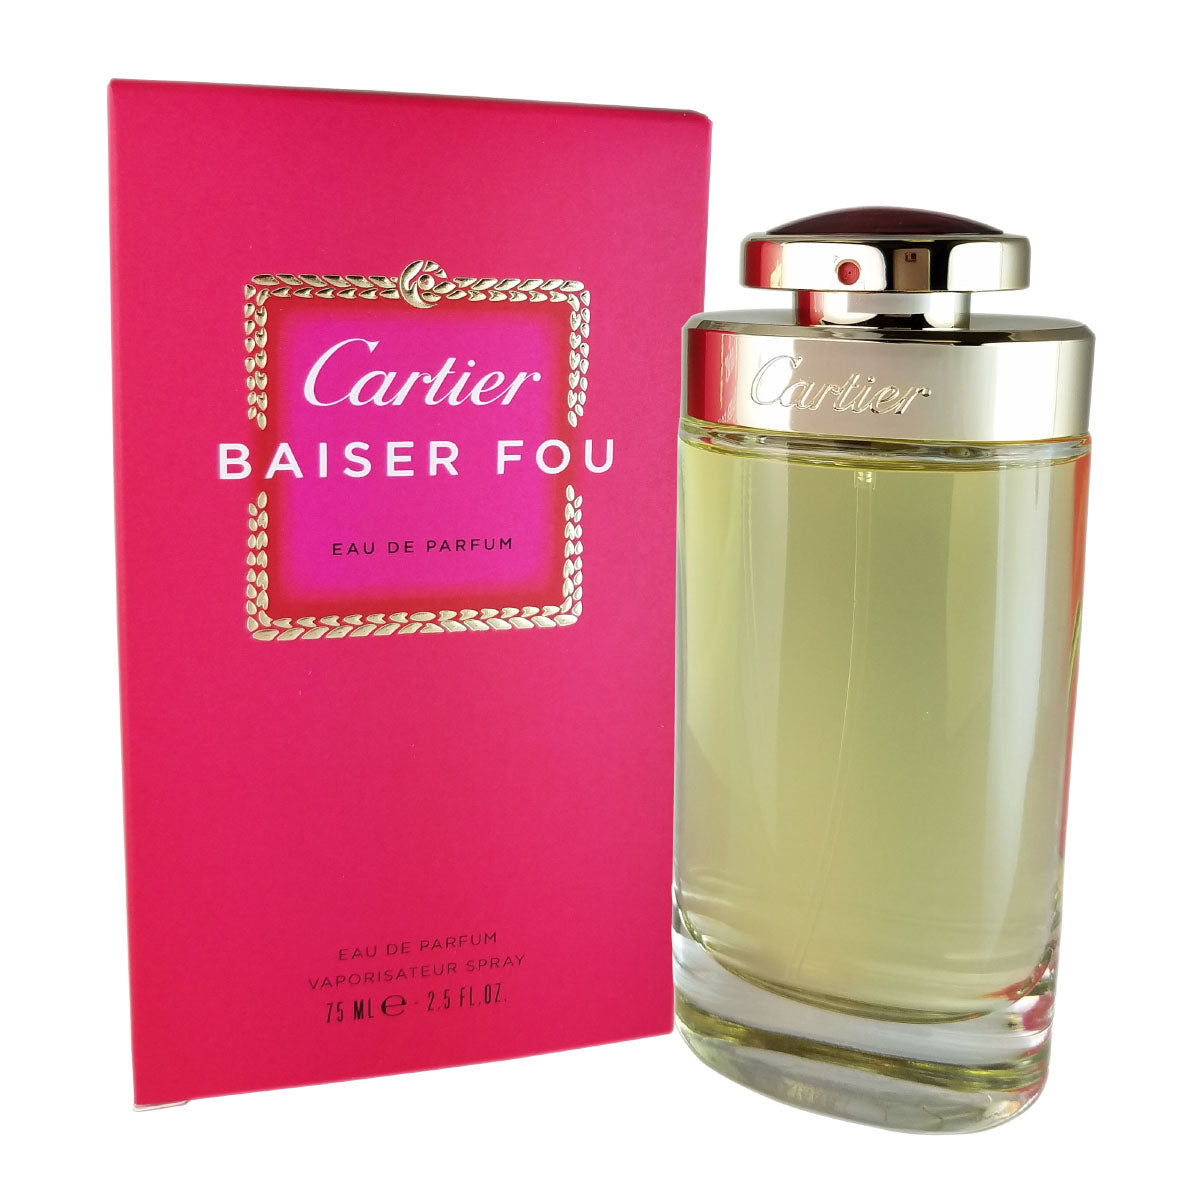 Cartier Baiser Fou for Women by Cartier 2.5 oz Eau De Parfum Spray